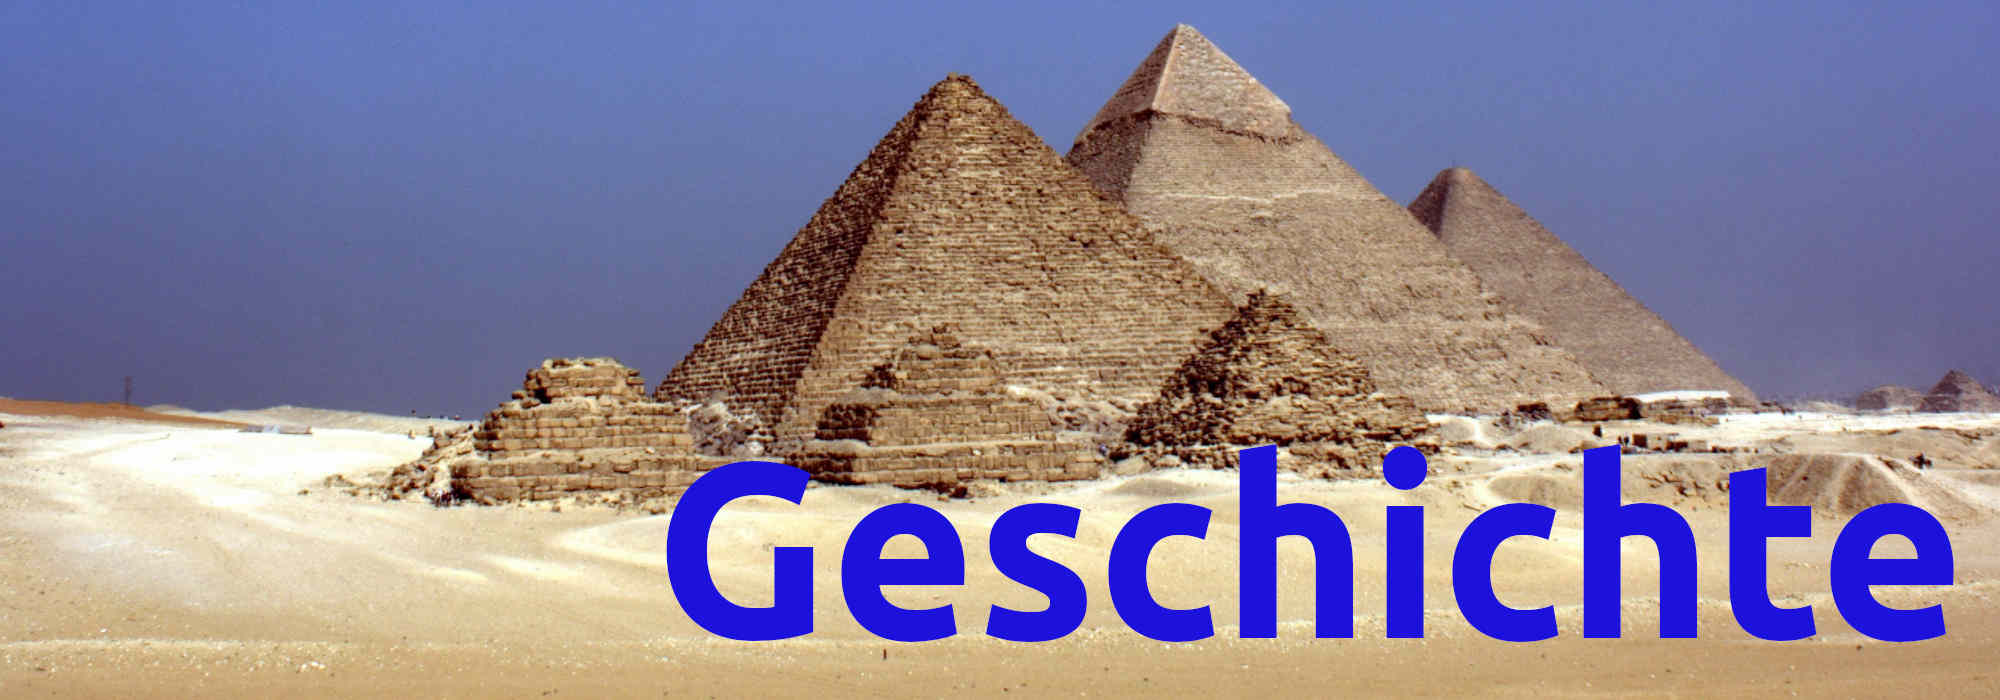 die Pyramiden von Gizeh